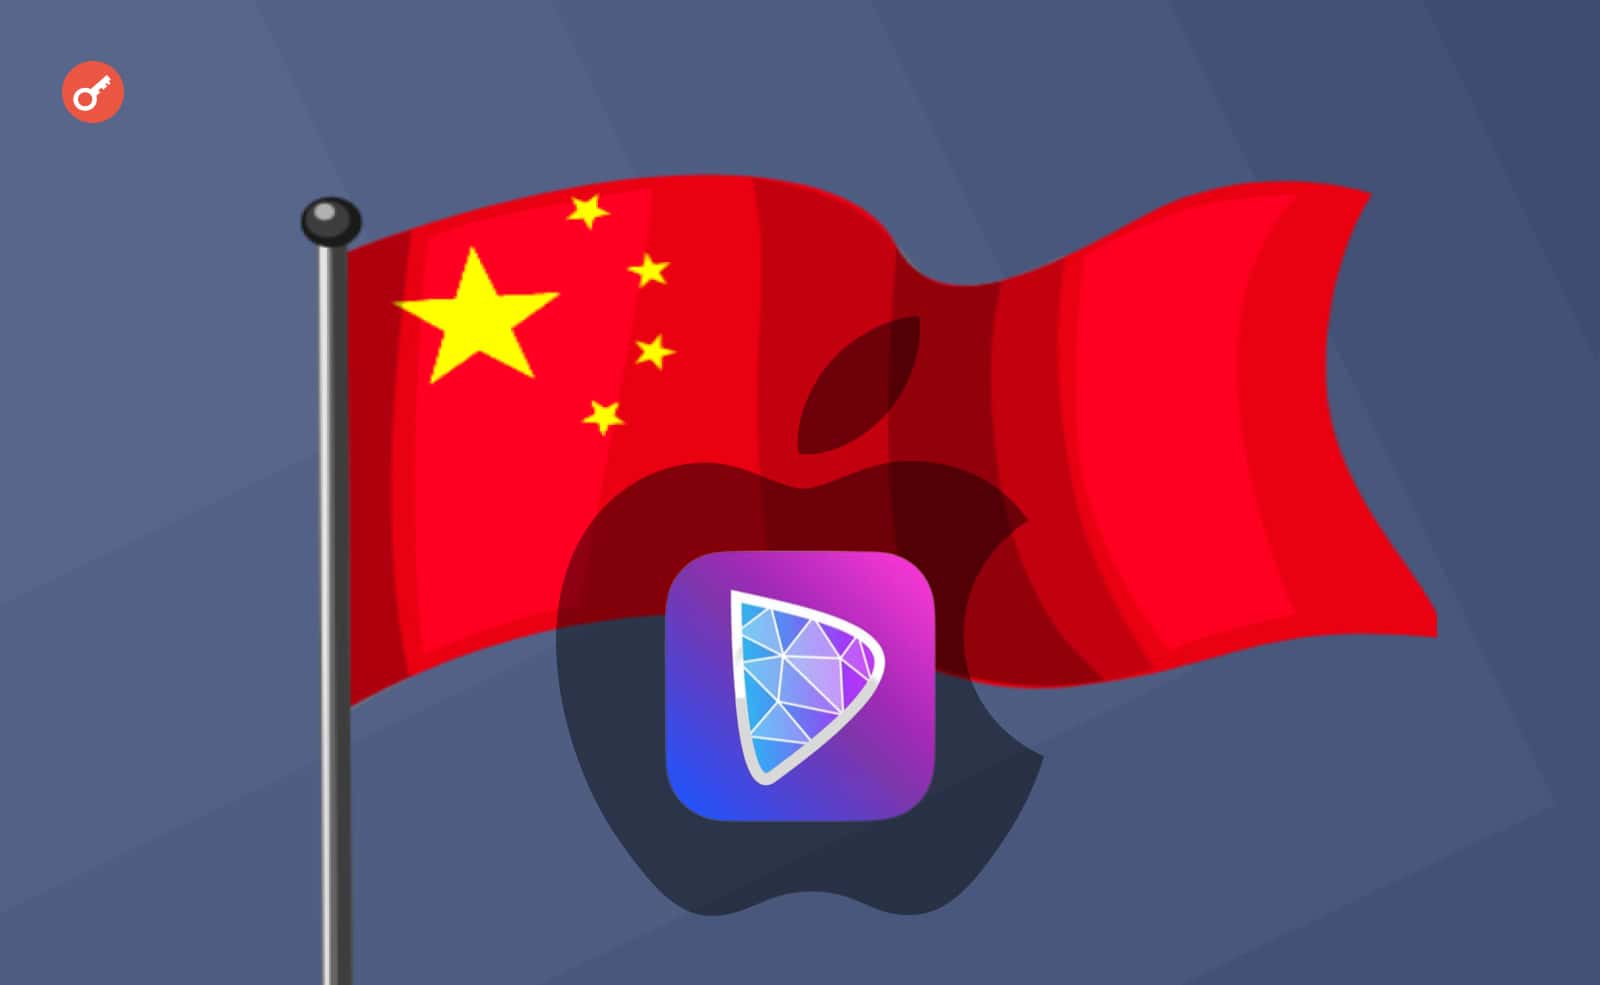 App Store заблокував додаток Damus у Китаї, пославшись на «заборонений контент». Головний колаж новини.